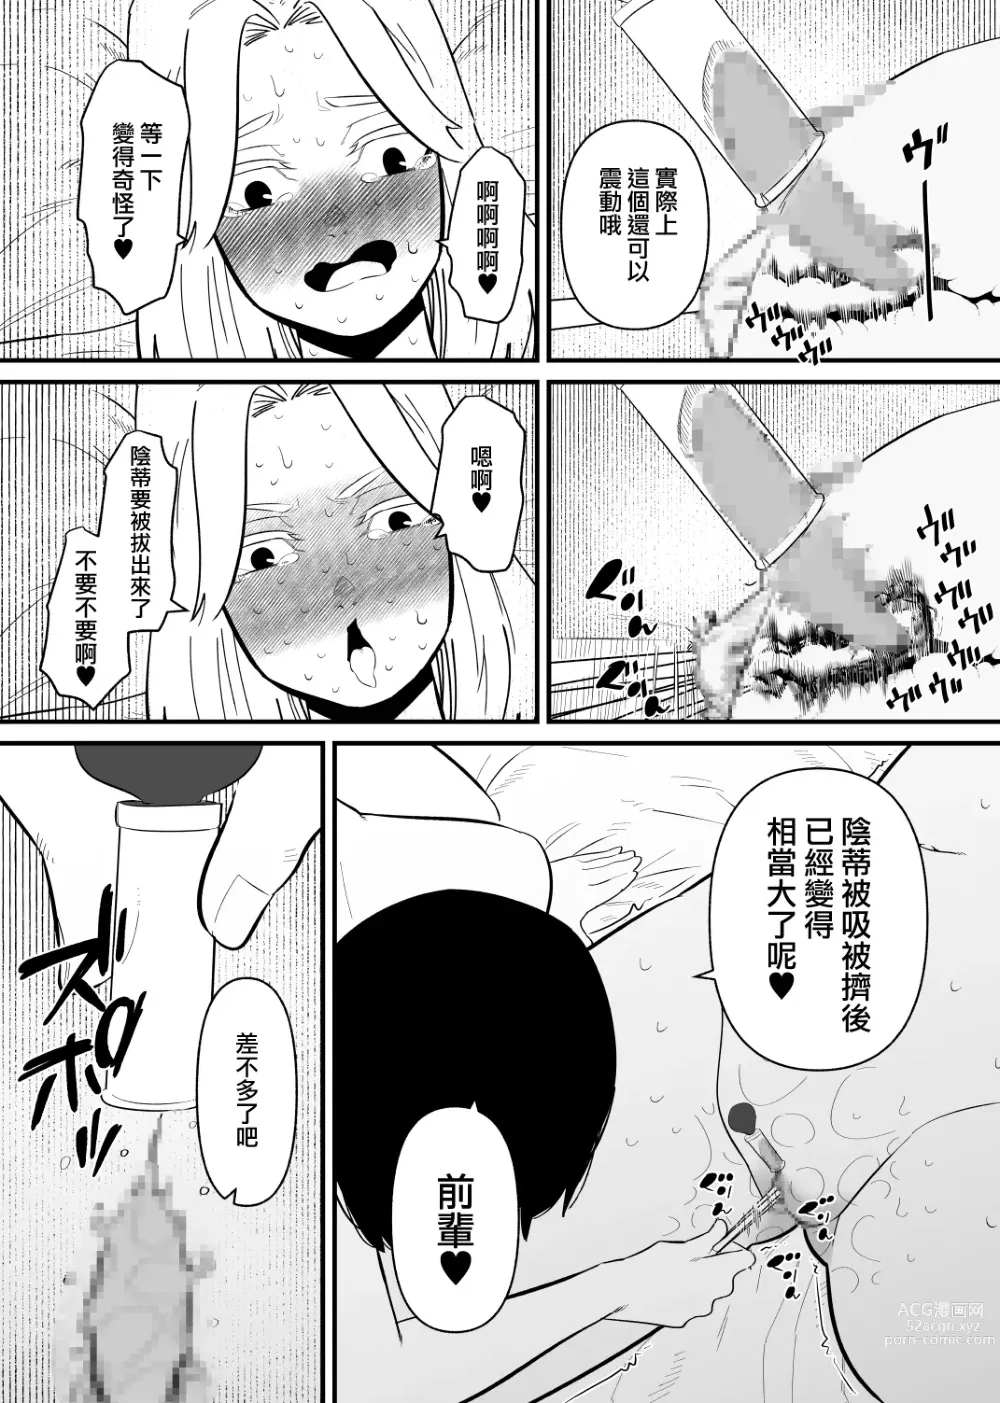 Page 15 of doujinshi 被後輩陰蒂調教後徹底墮落了